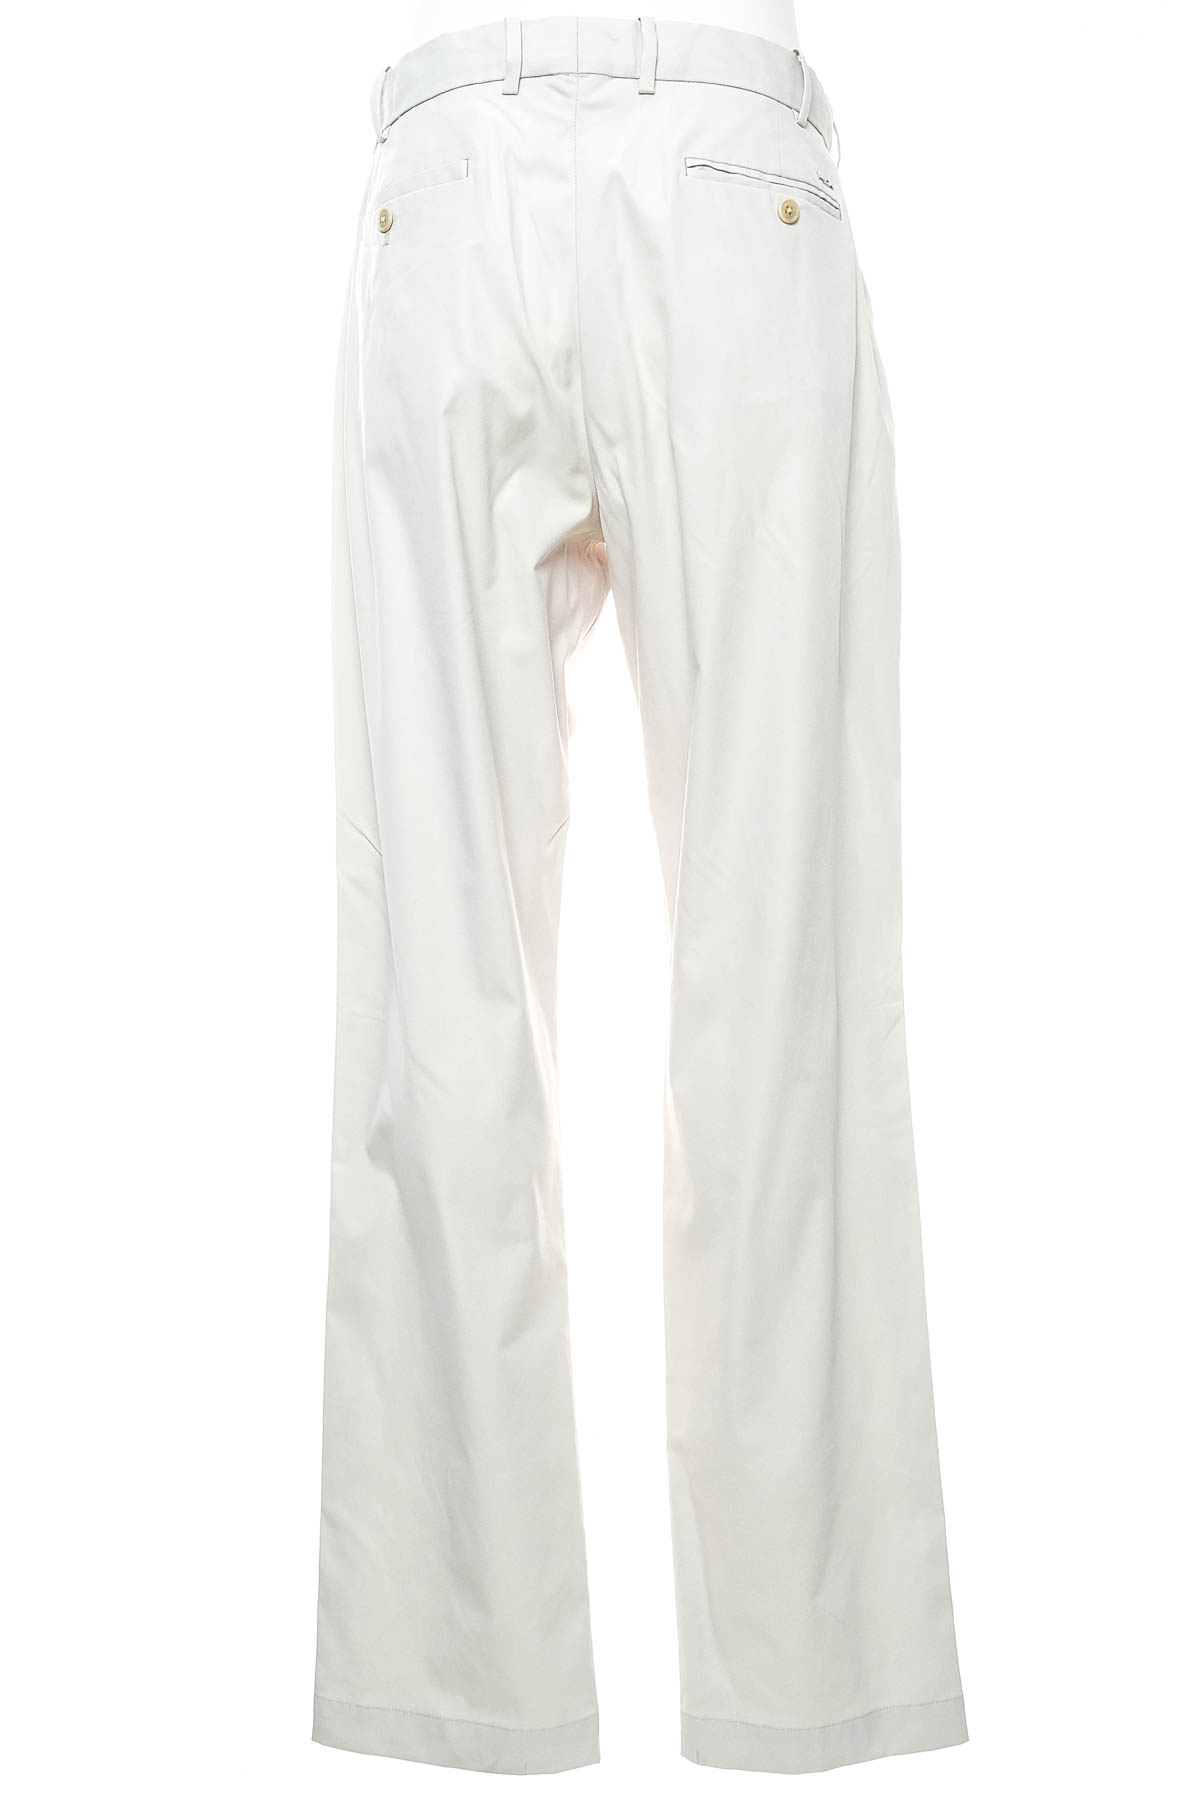 Men's trousers - RLX x Ralph Lauren - 1